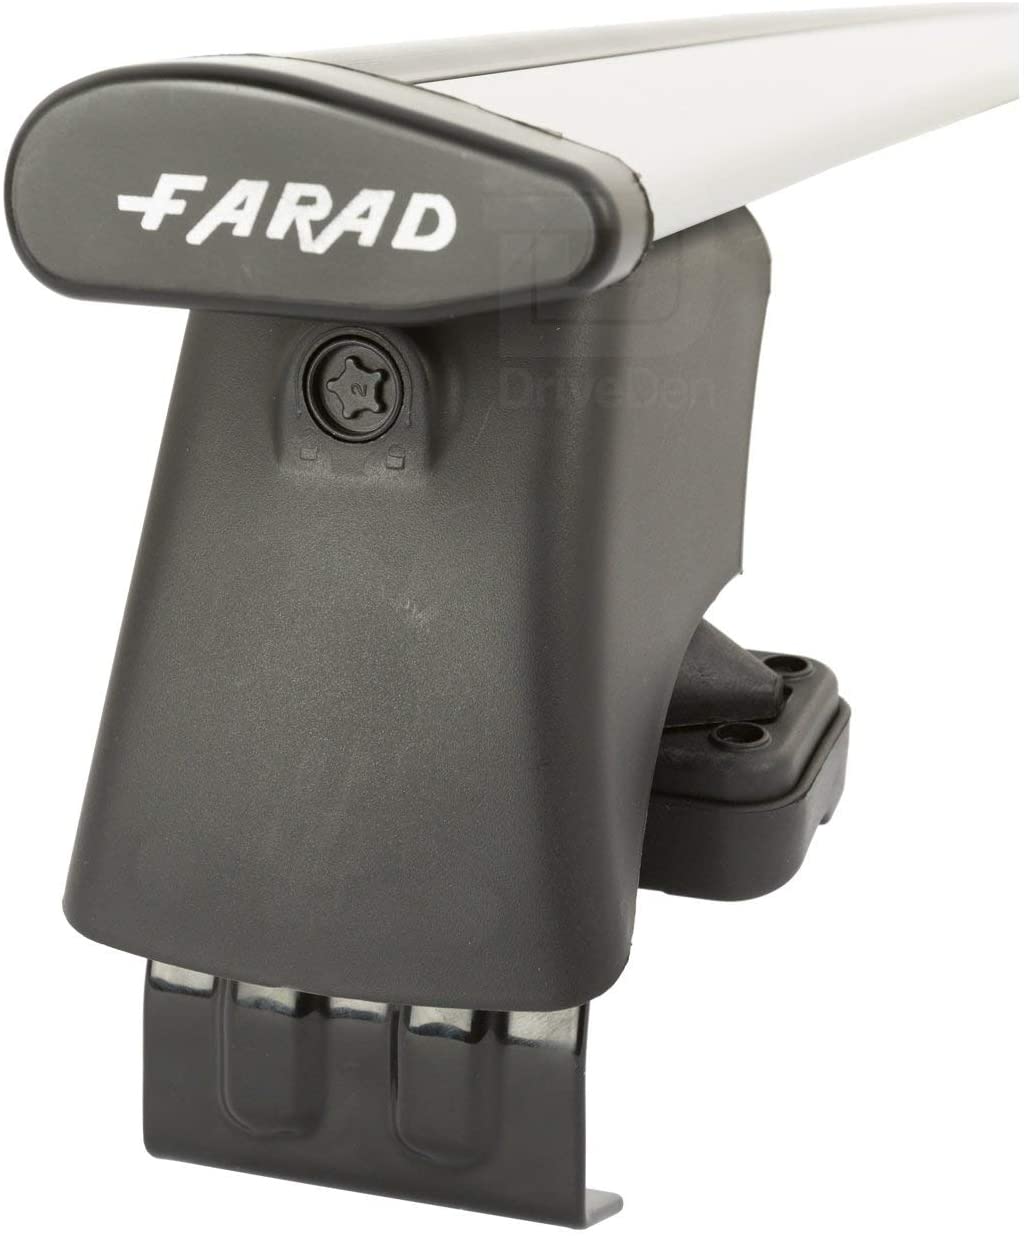 FARAD-Kit H2 per barre portatutto - Audi A3 2003-2012 (senza corrimano)